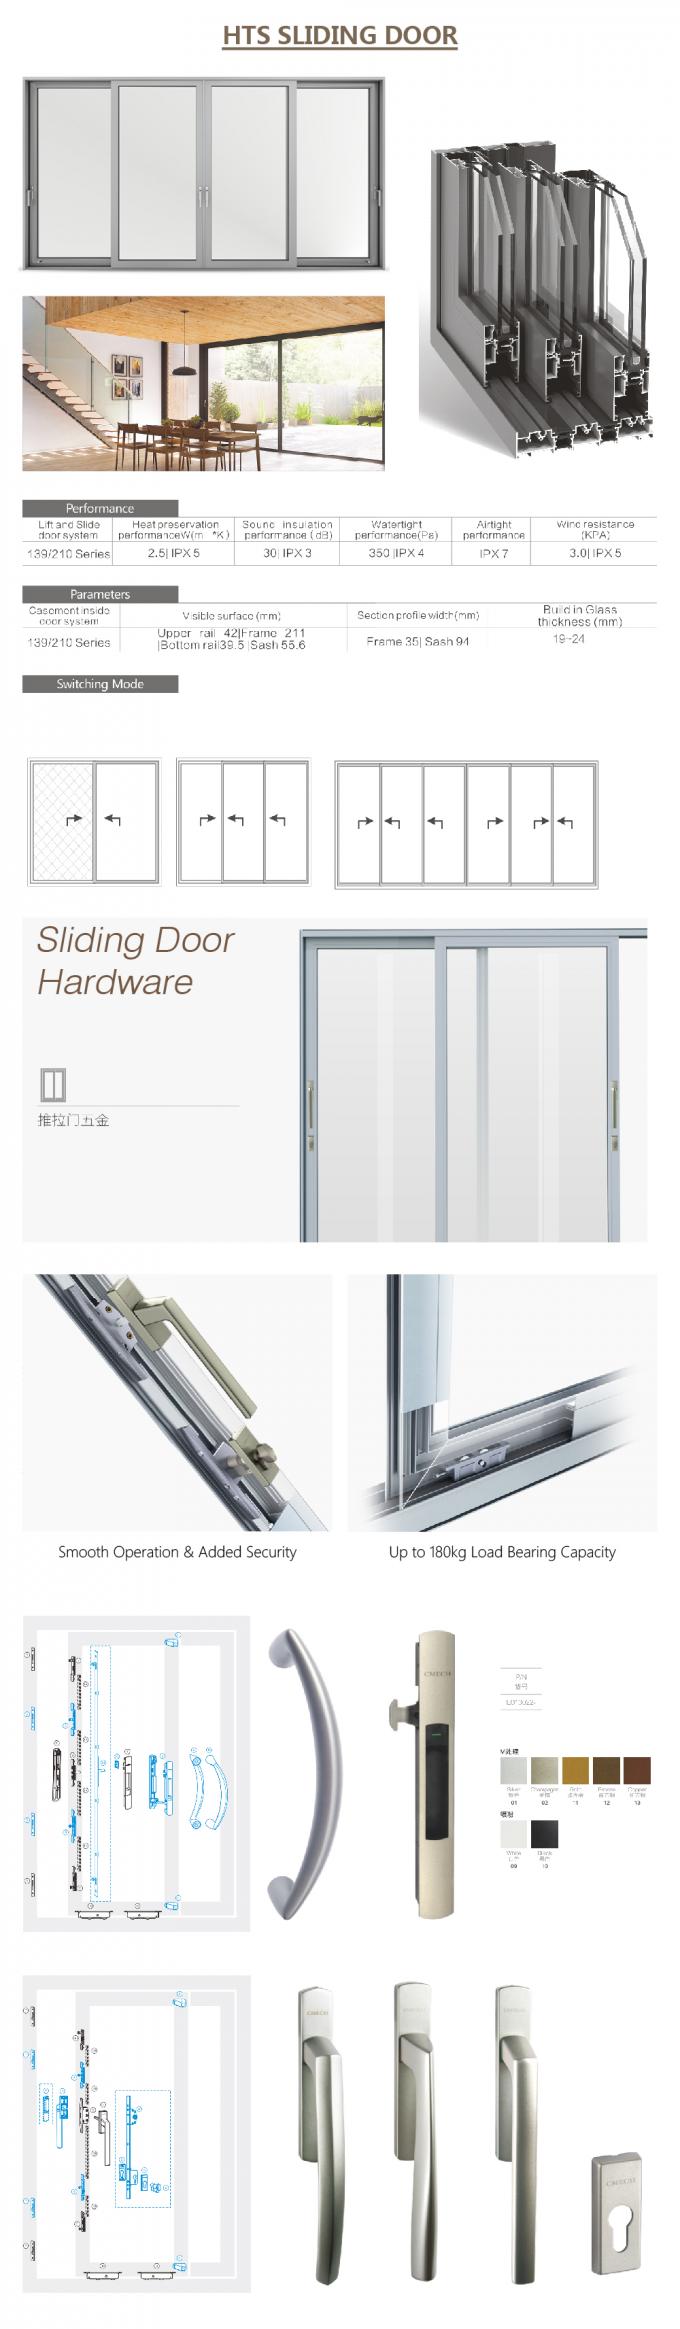 сползающ louvered двери, раздвижная дверь dorma автоматическая, раздвижная дверь дизайна алюминиевая, тяжелая раздвижная дверь, сползая стеклянная дверь автоматическая, алюминиевые детали раздвижной двери